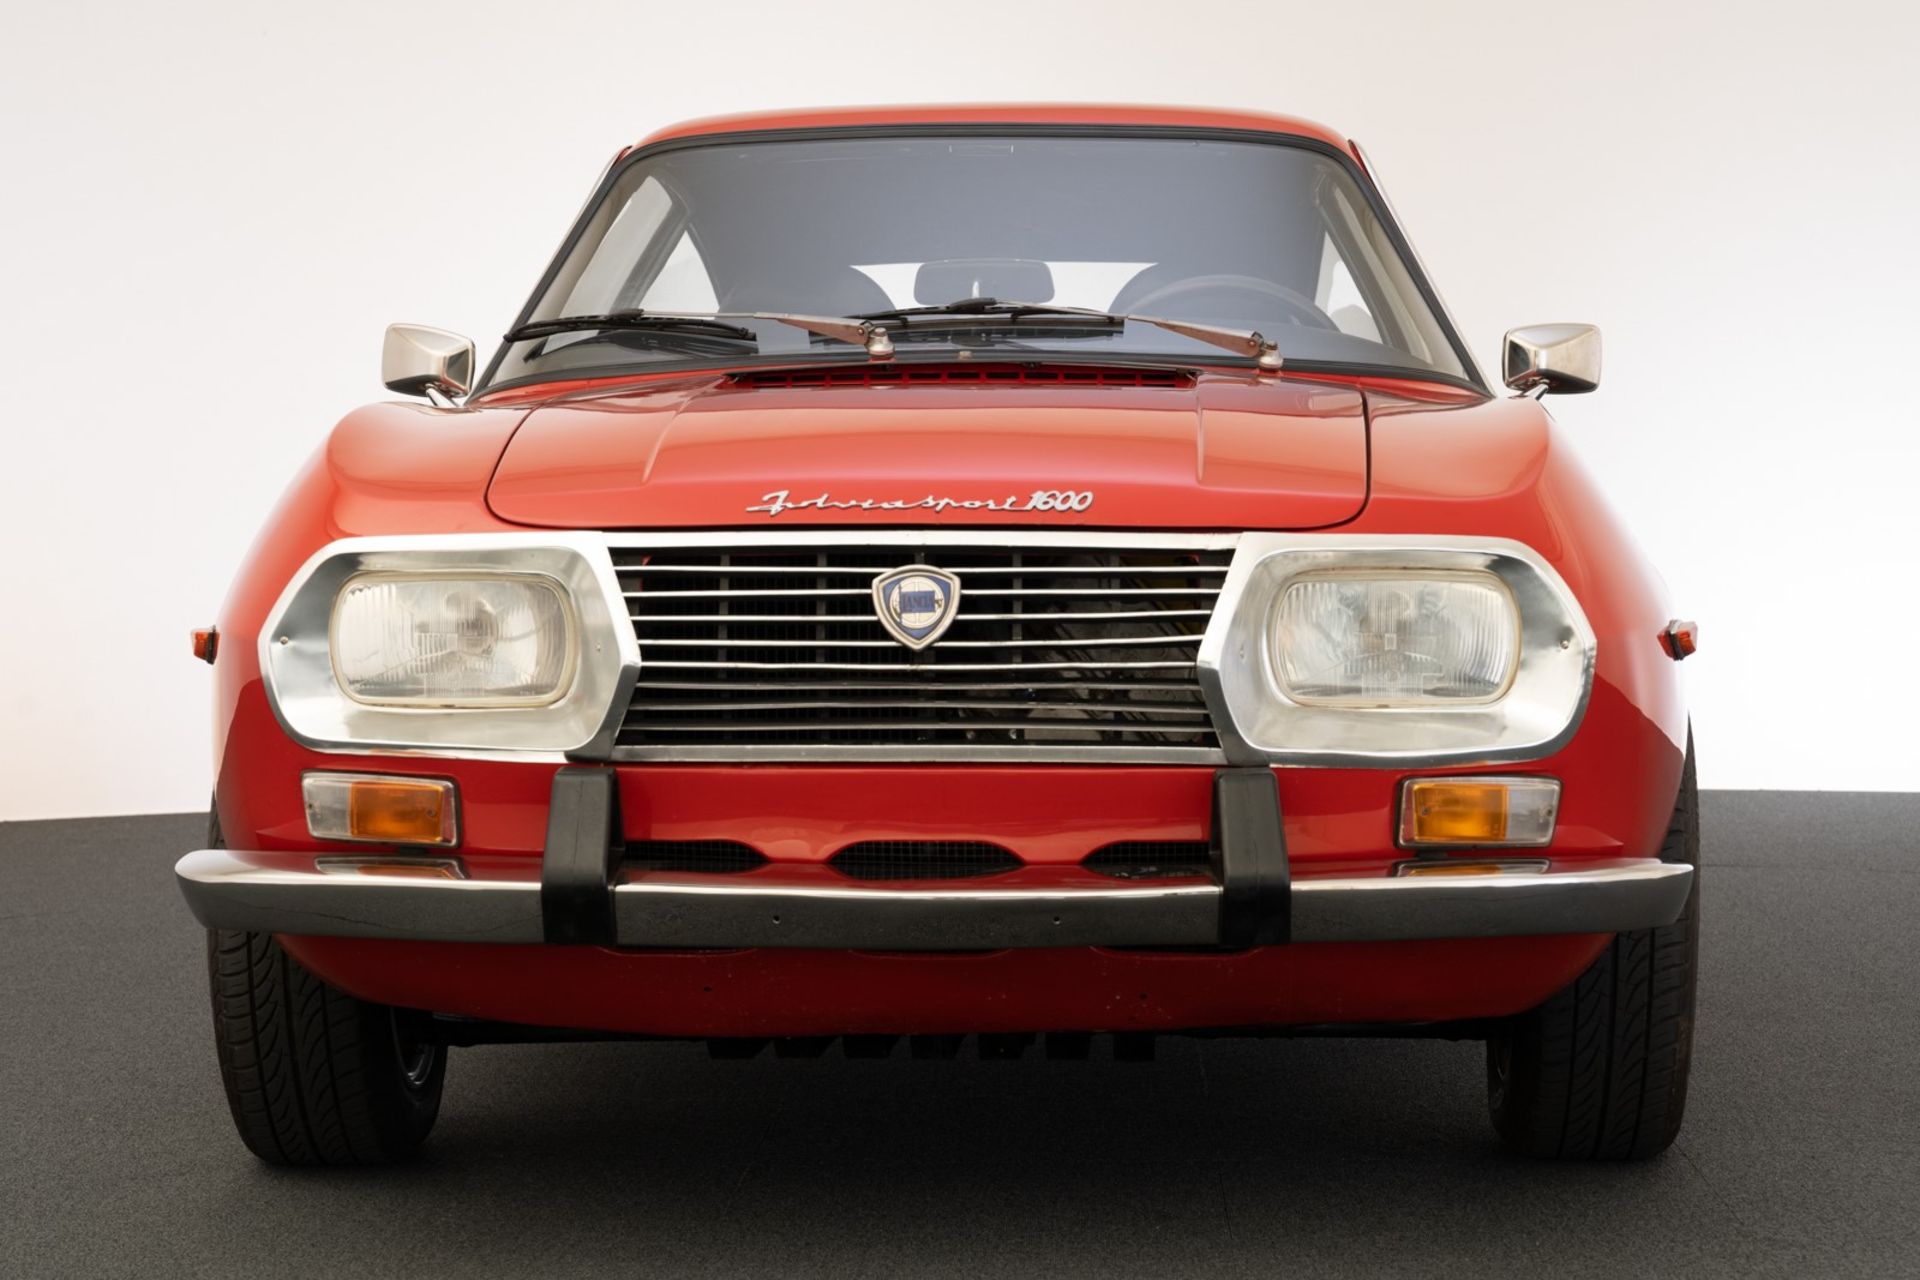 1972 Lancia Fulvia Sport 1600 (Zagato) - Image 2 of 14